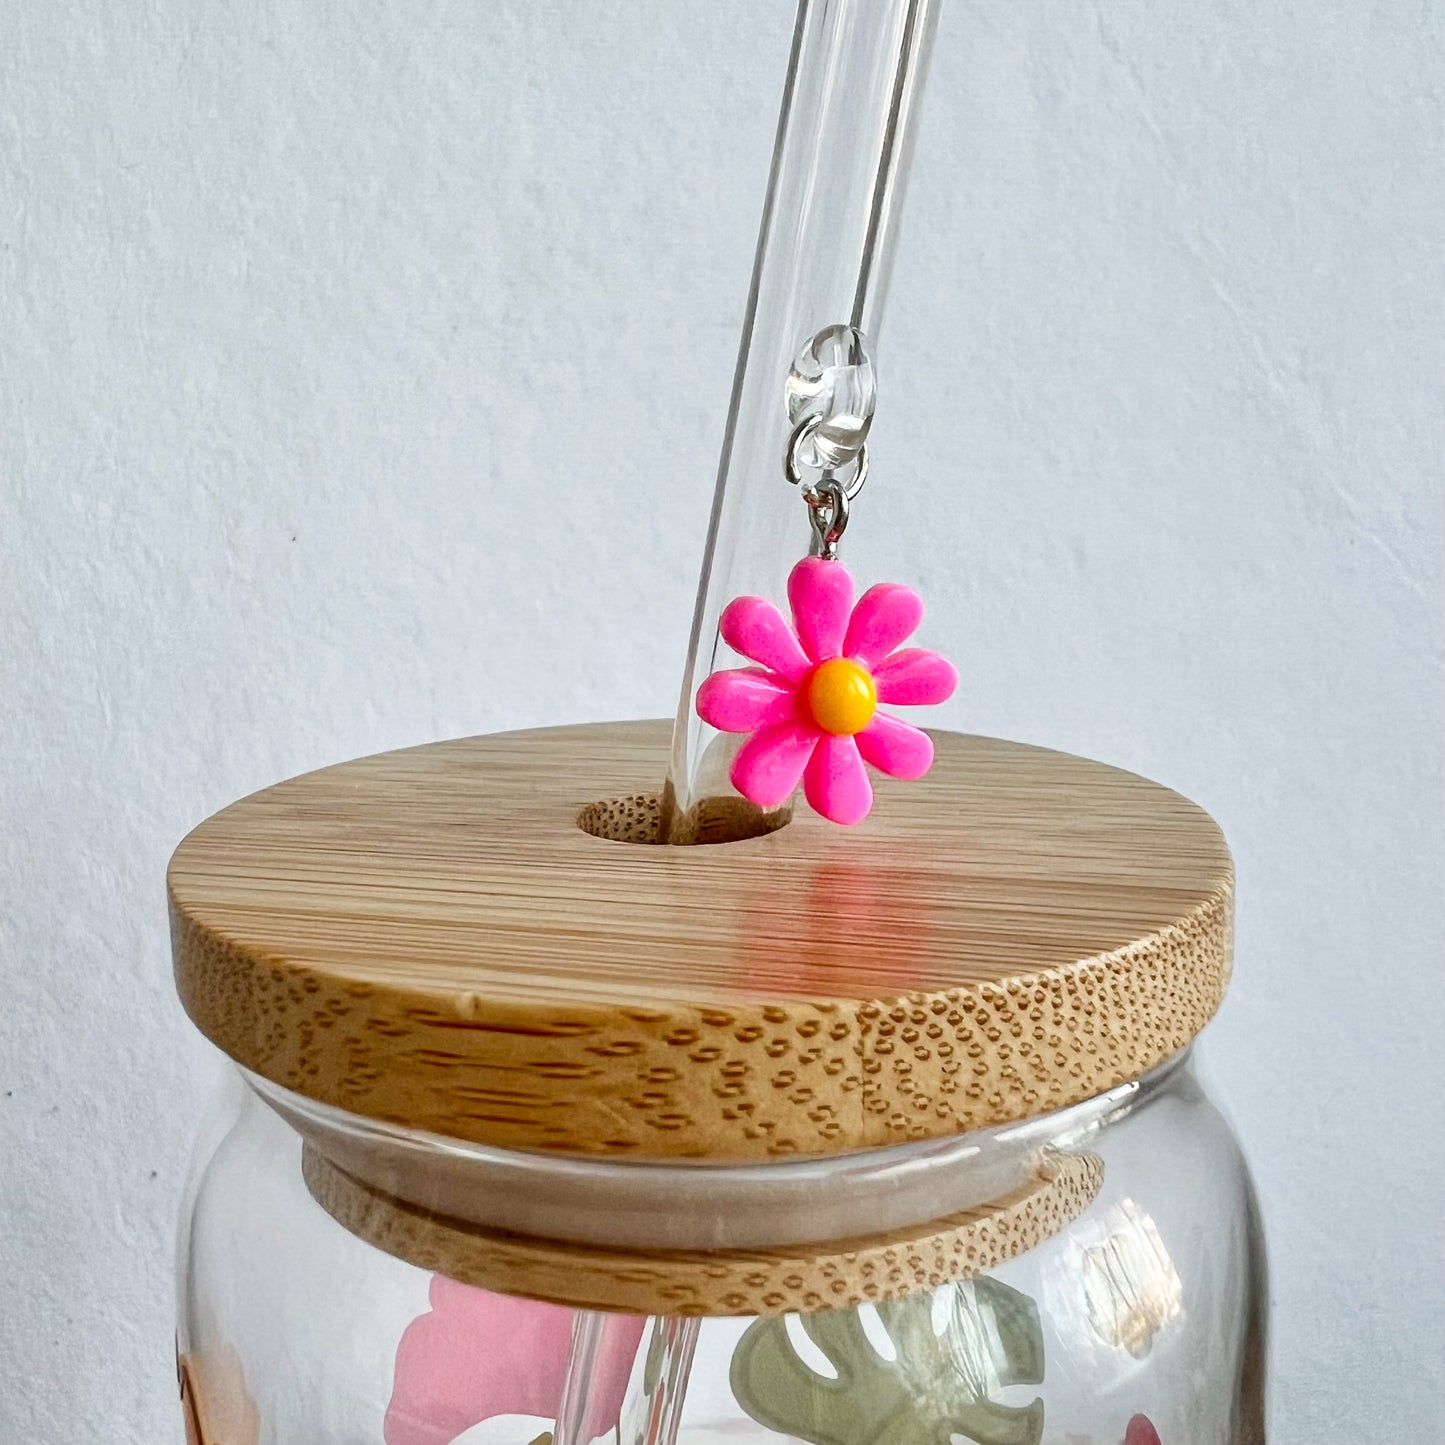 Glass Straw With Flower Charm